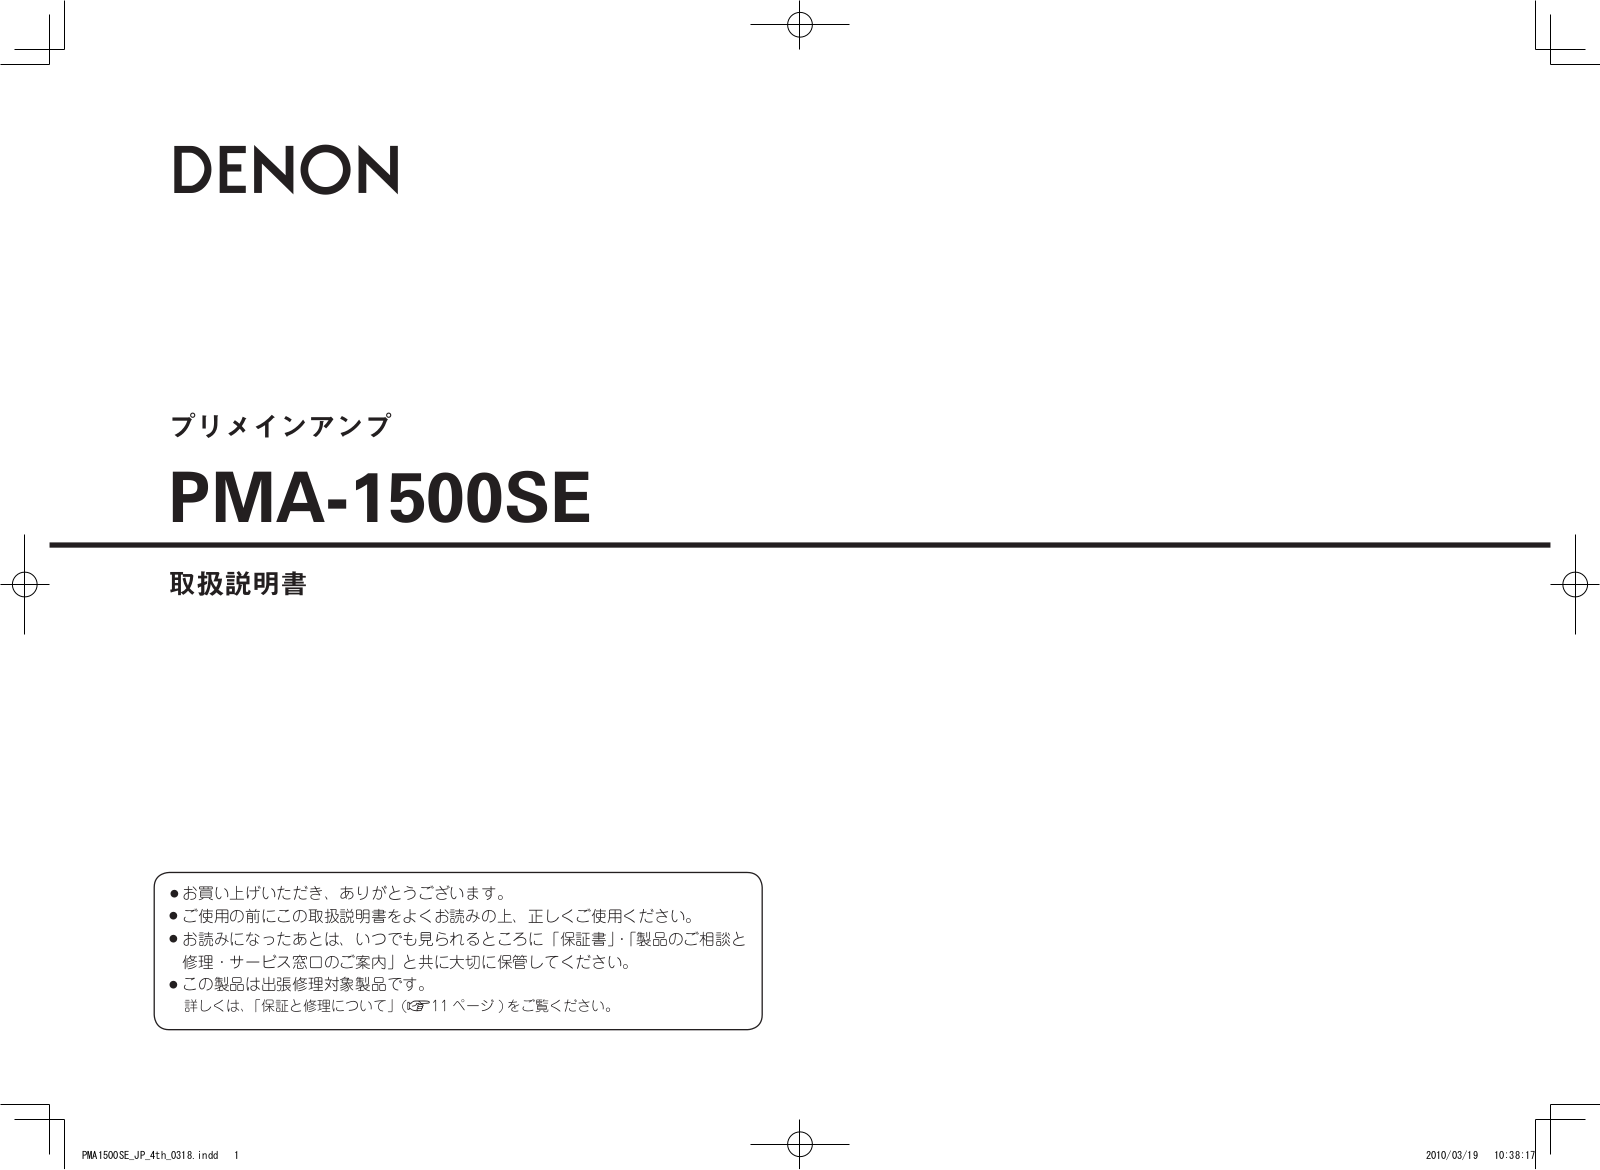 Denon PMA-1500SE Owner's Manual